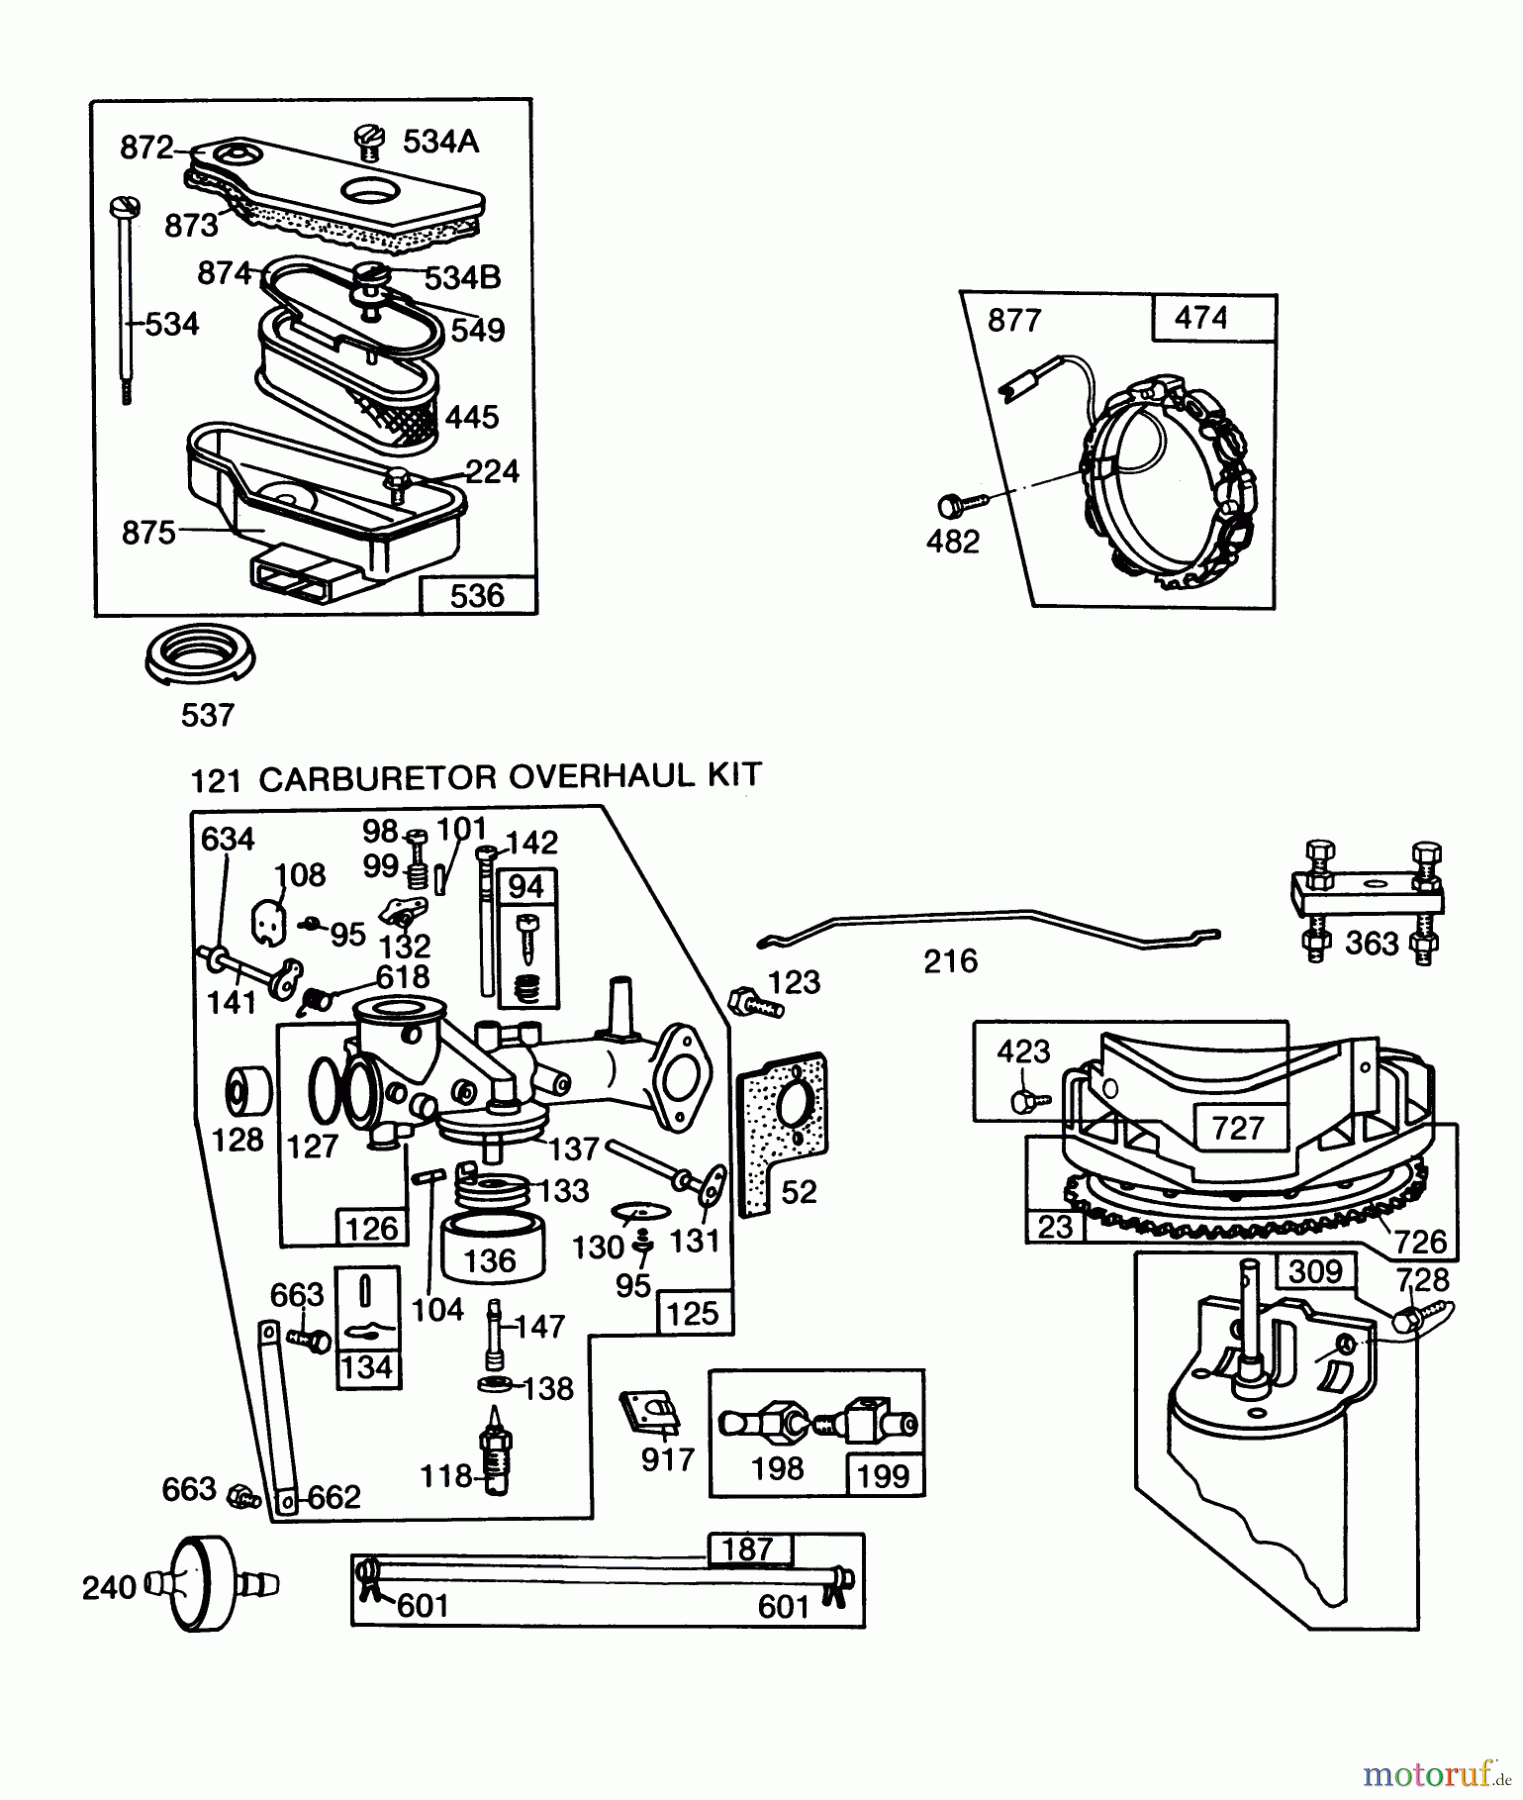  Toro Neu Mowers, Lawn & Garden Tractor Seite 1 57300 (8-32) - Toro 8-32 Front Engine Rider, 1985 (5000001-5999999) ENGINE BRIGGS & STRATTON MODEL 253707-0157-01 (MODEL 57360) #2